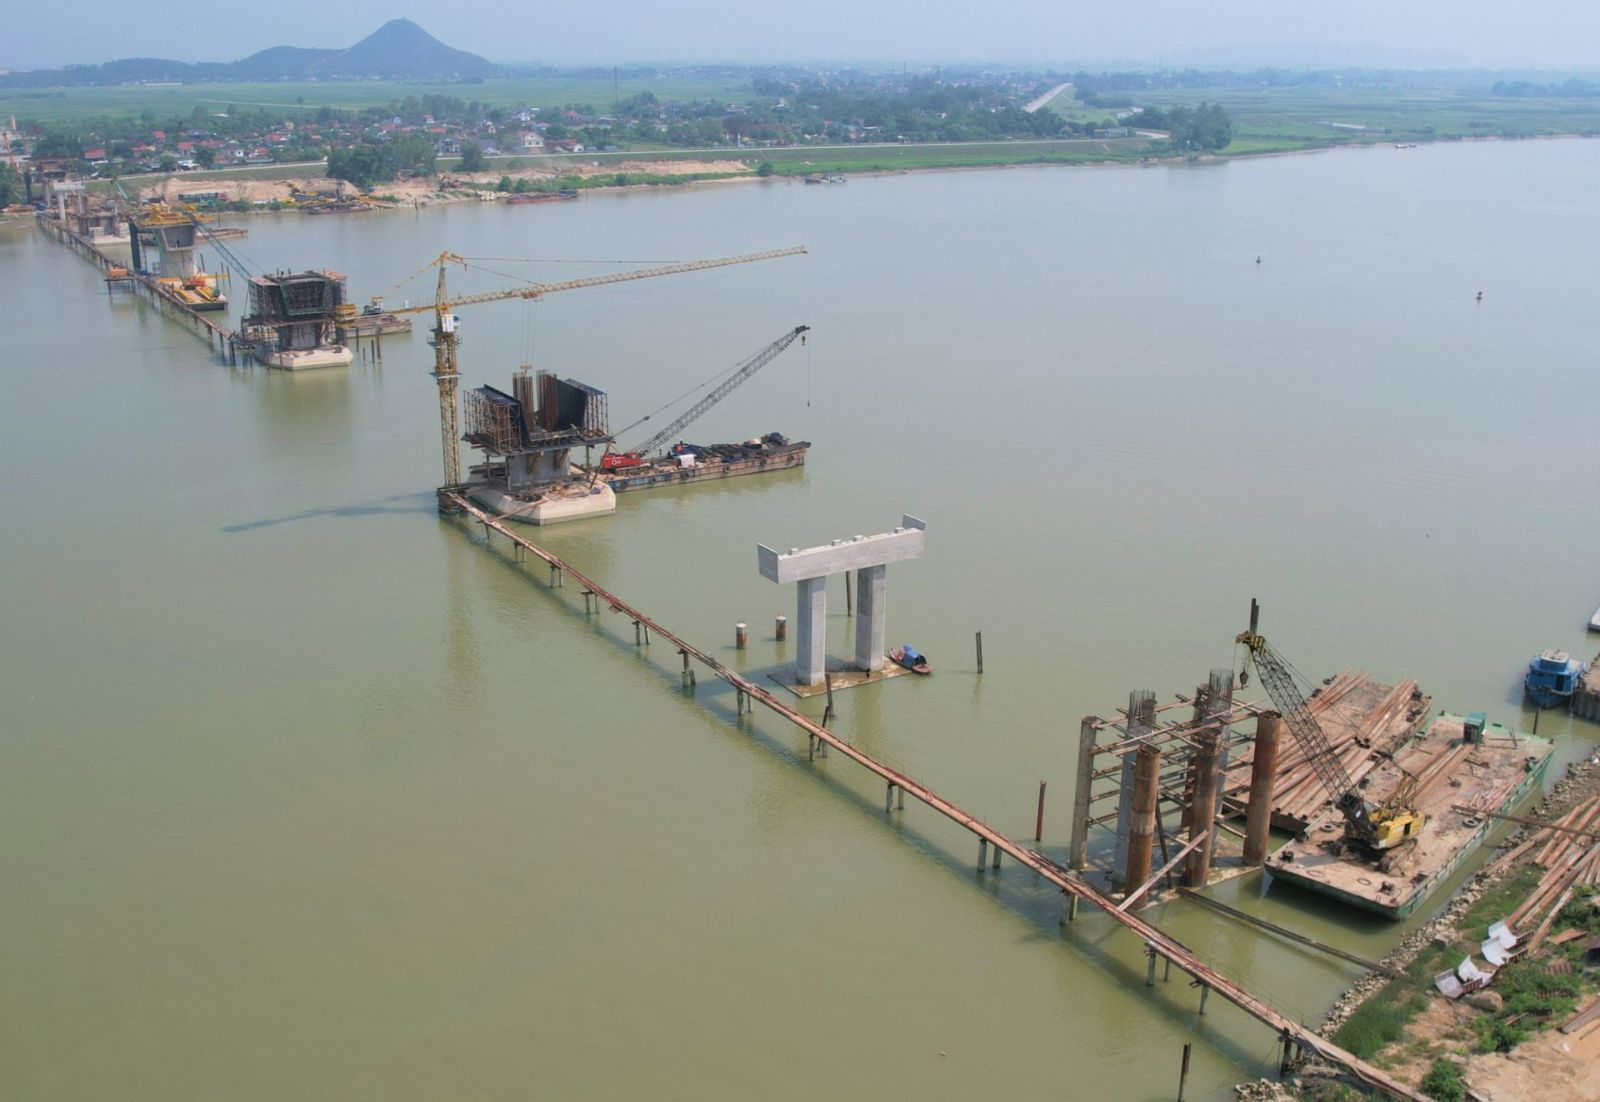 Cầu Hưng Đức bắc qua sông Lam nối Nghệ An với Hà Tĩnh thuộc dự án cao tốc Bắc – Nam phía Đông đang được khẩn trương thi công